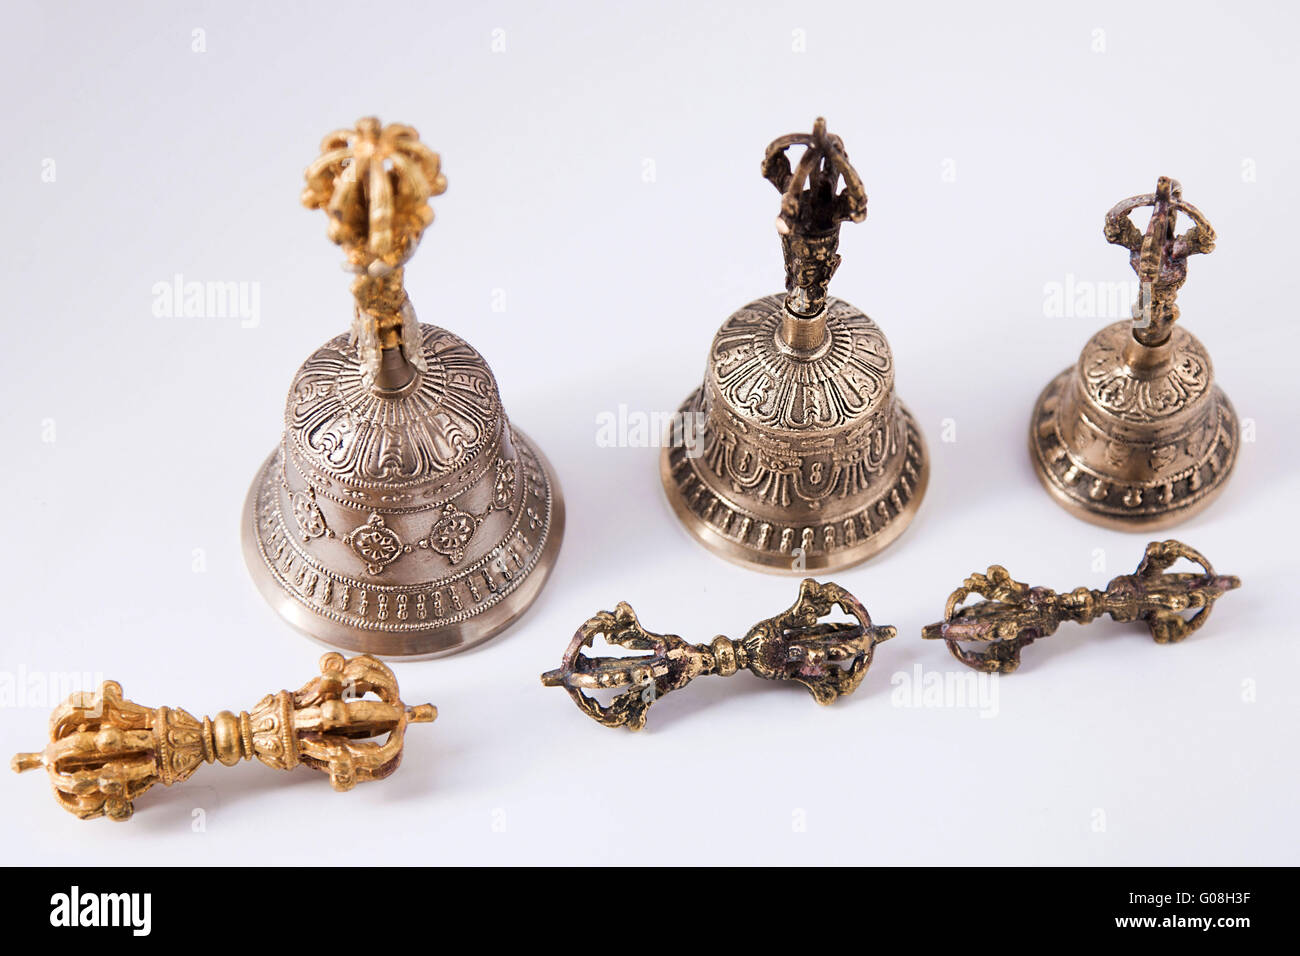 10+ Free Tibetan Bells & Tibet Images - Pixabay